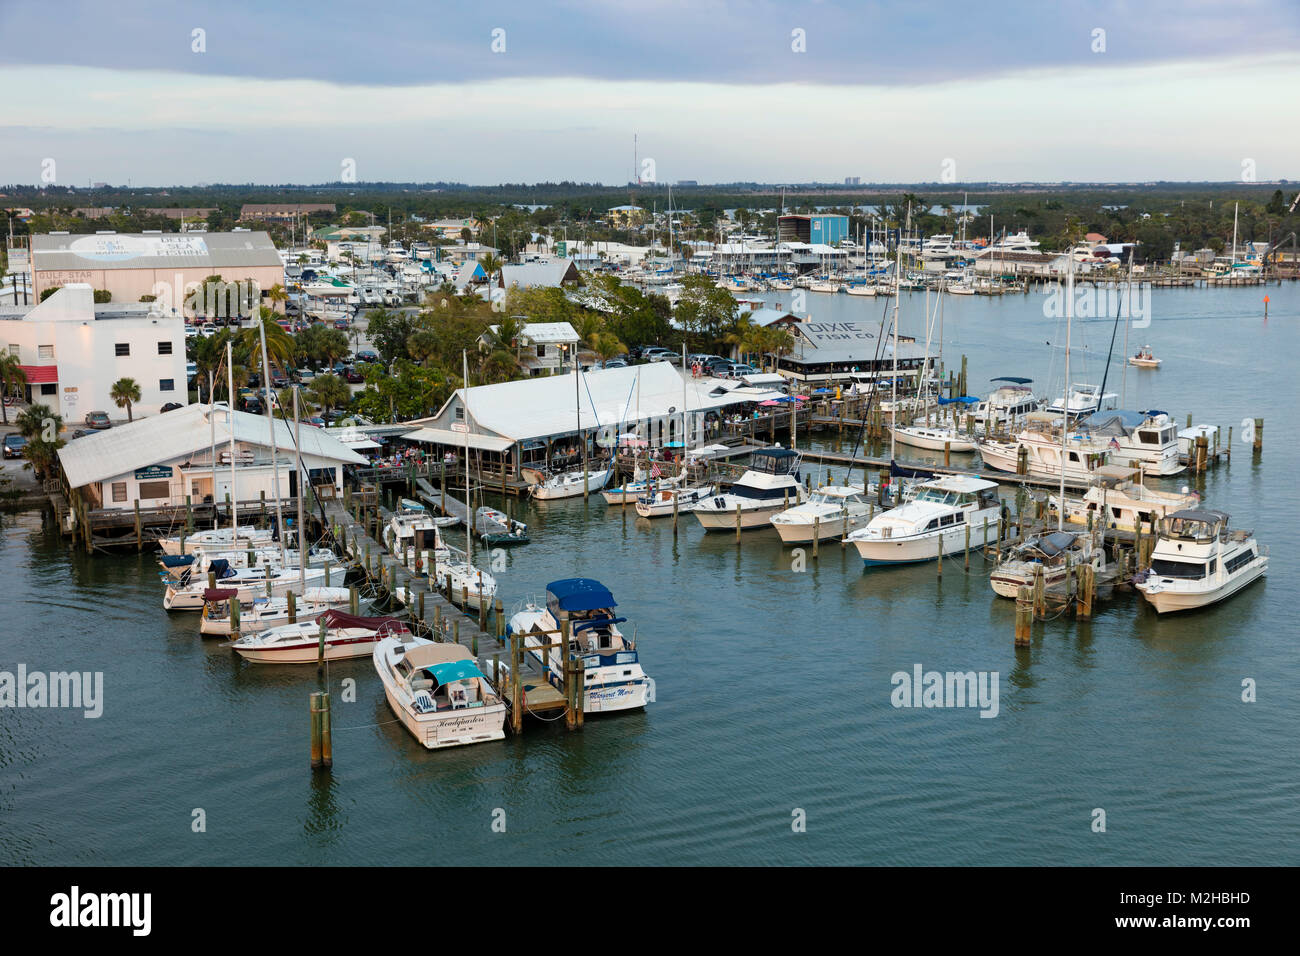 Docks, Boote, Geschäfte, Restaurants entlang der Uferpromenade von San Carlos Insel in der Nähe von Ft Myers Beach, Florida, USA Stockfoto